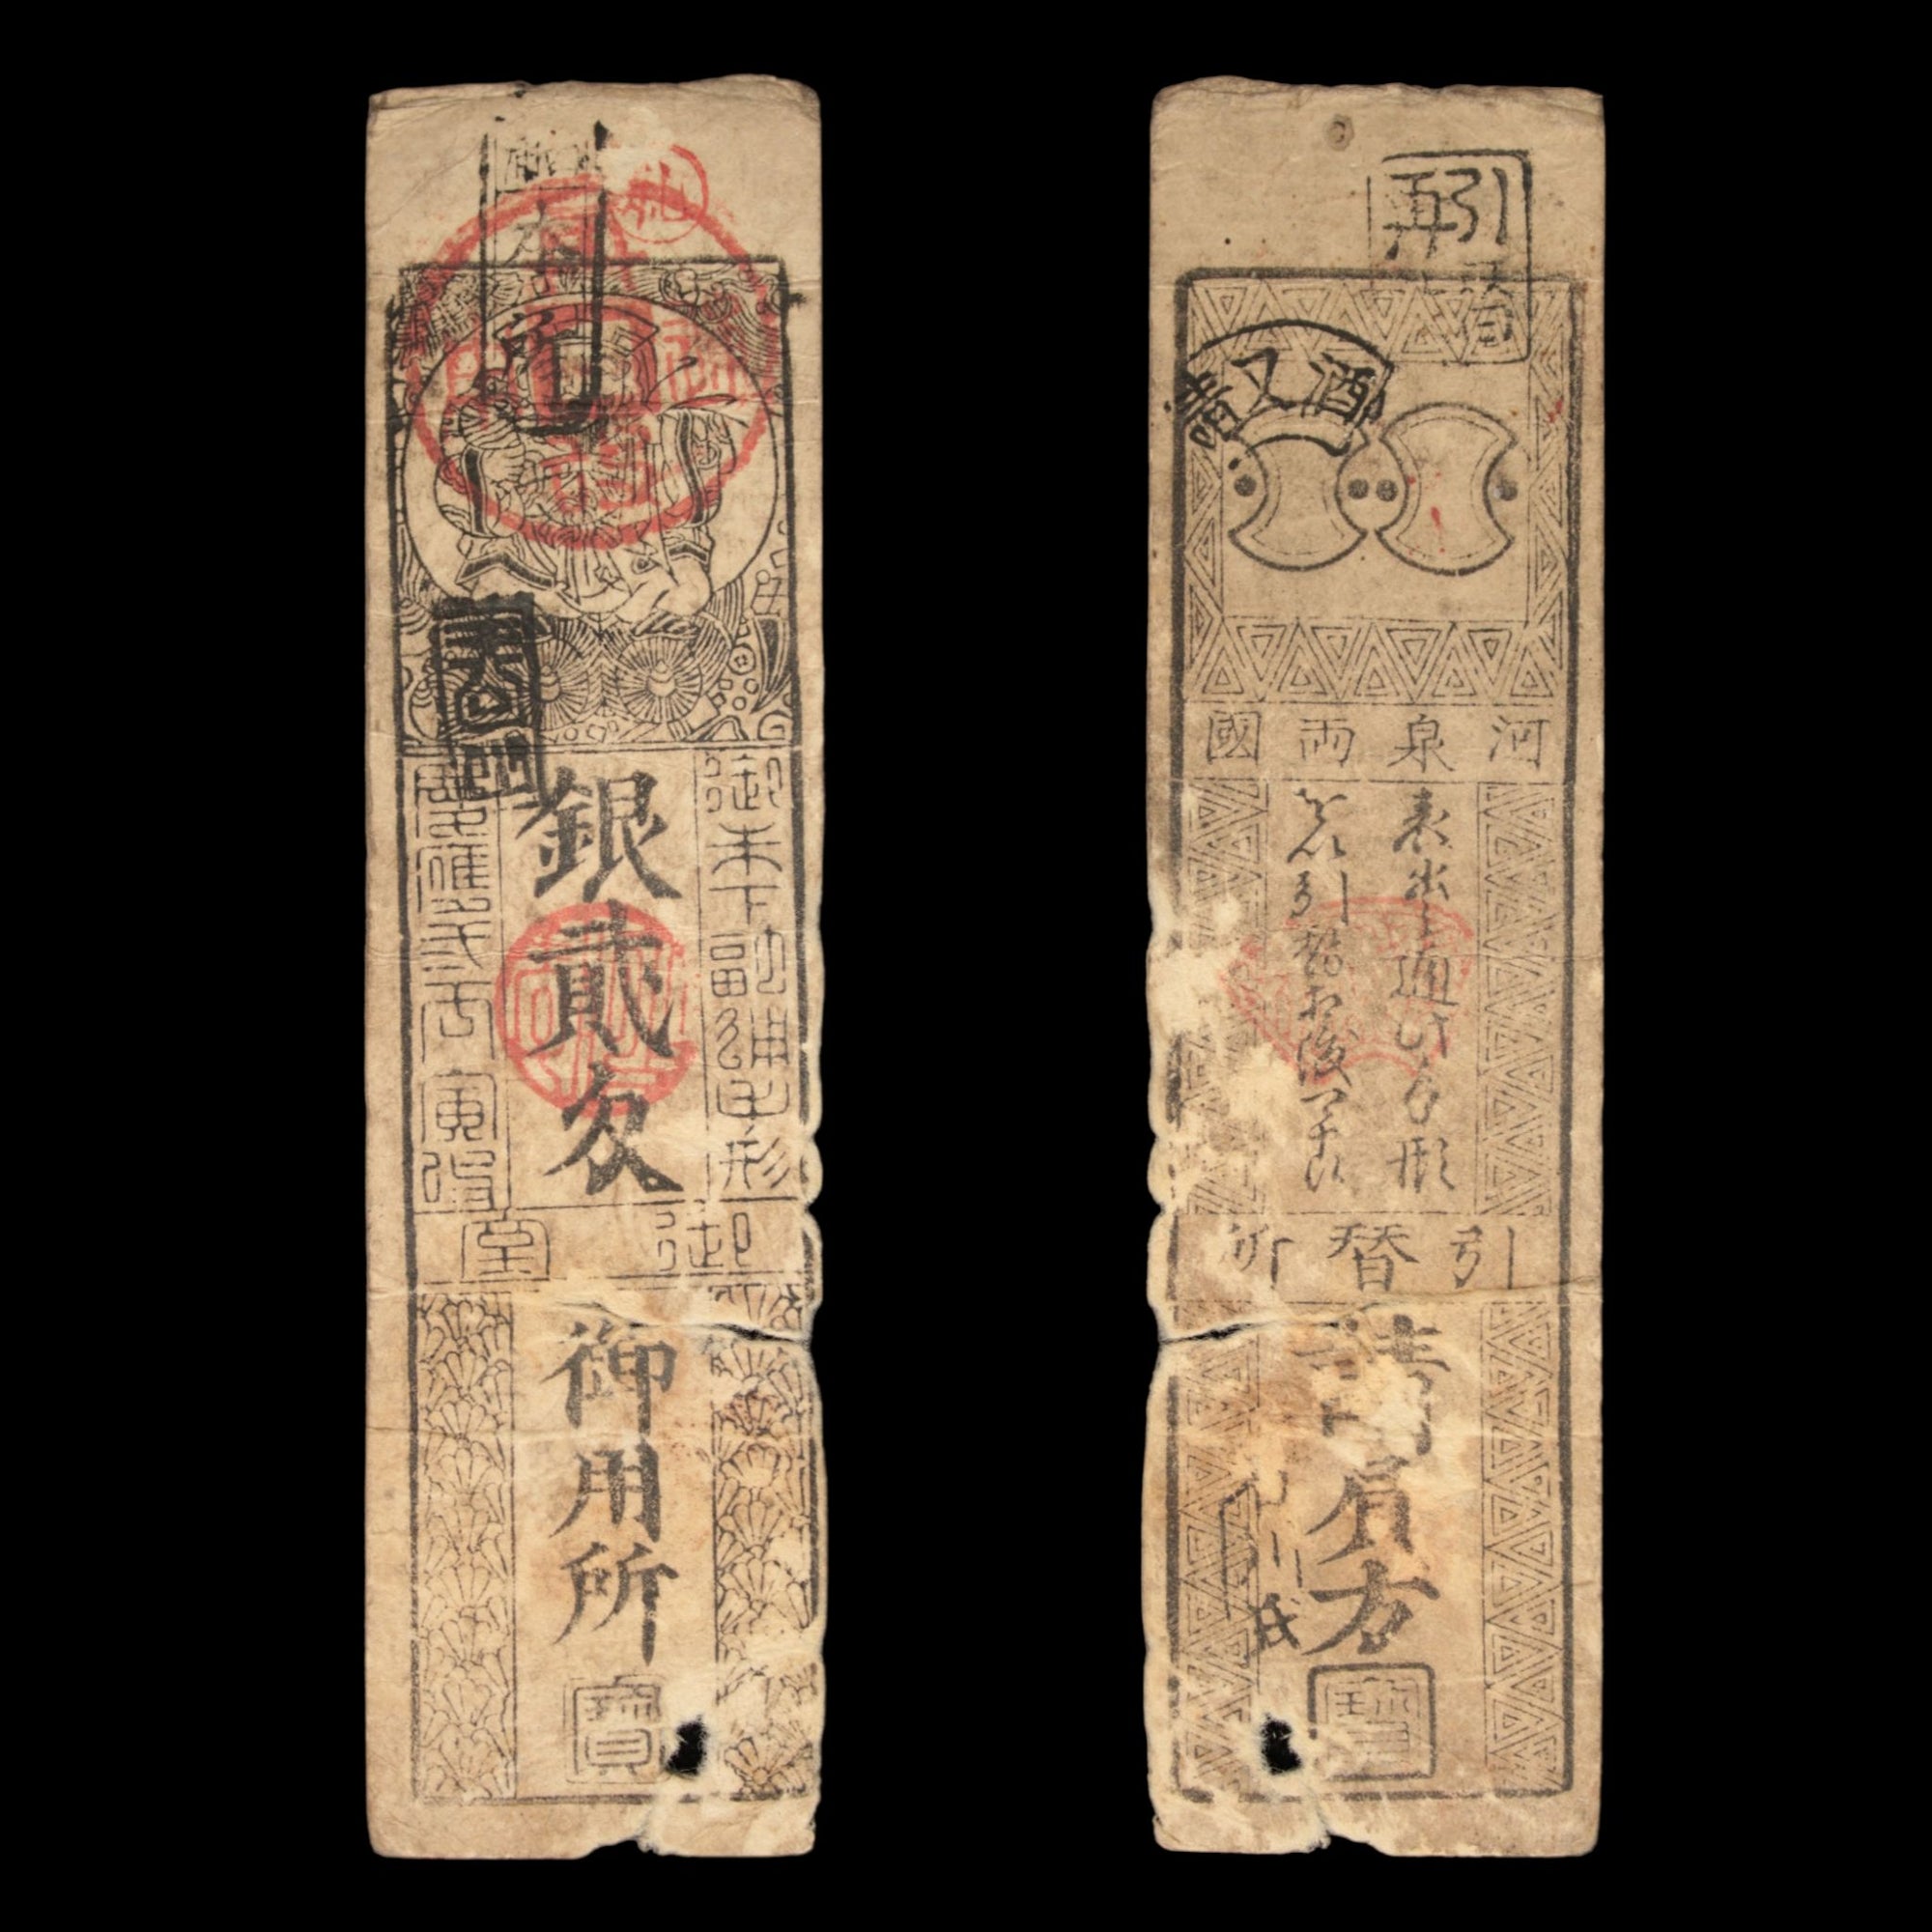 Hansatsu, 2 Silver Momne, Daikoku - Keio 2 (1866) - Edo Japan - 3/15/23 Auction